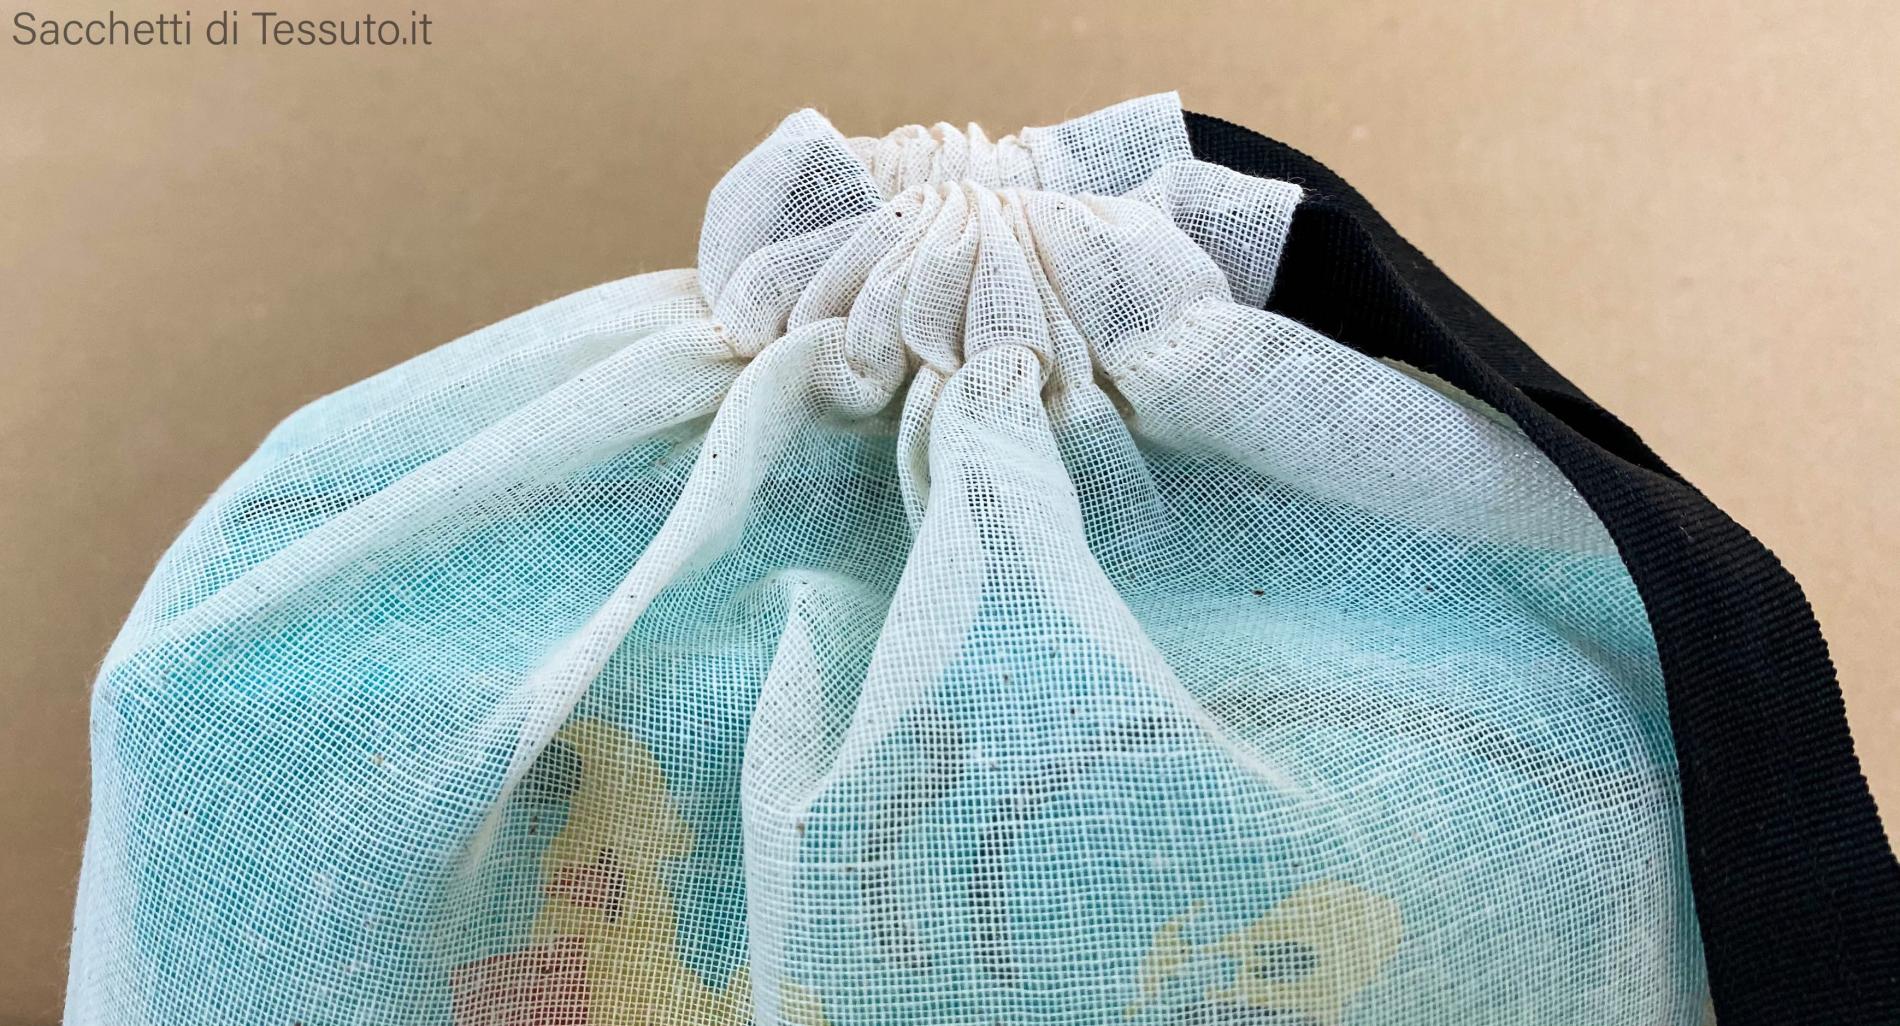 feste 20 sacchetti in mussola di cotone per matrimoni leggeri 7 x 9 cm riutilizzabili compleanni con coulisse SumDirect sacchetti regalo traspiranti 